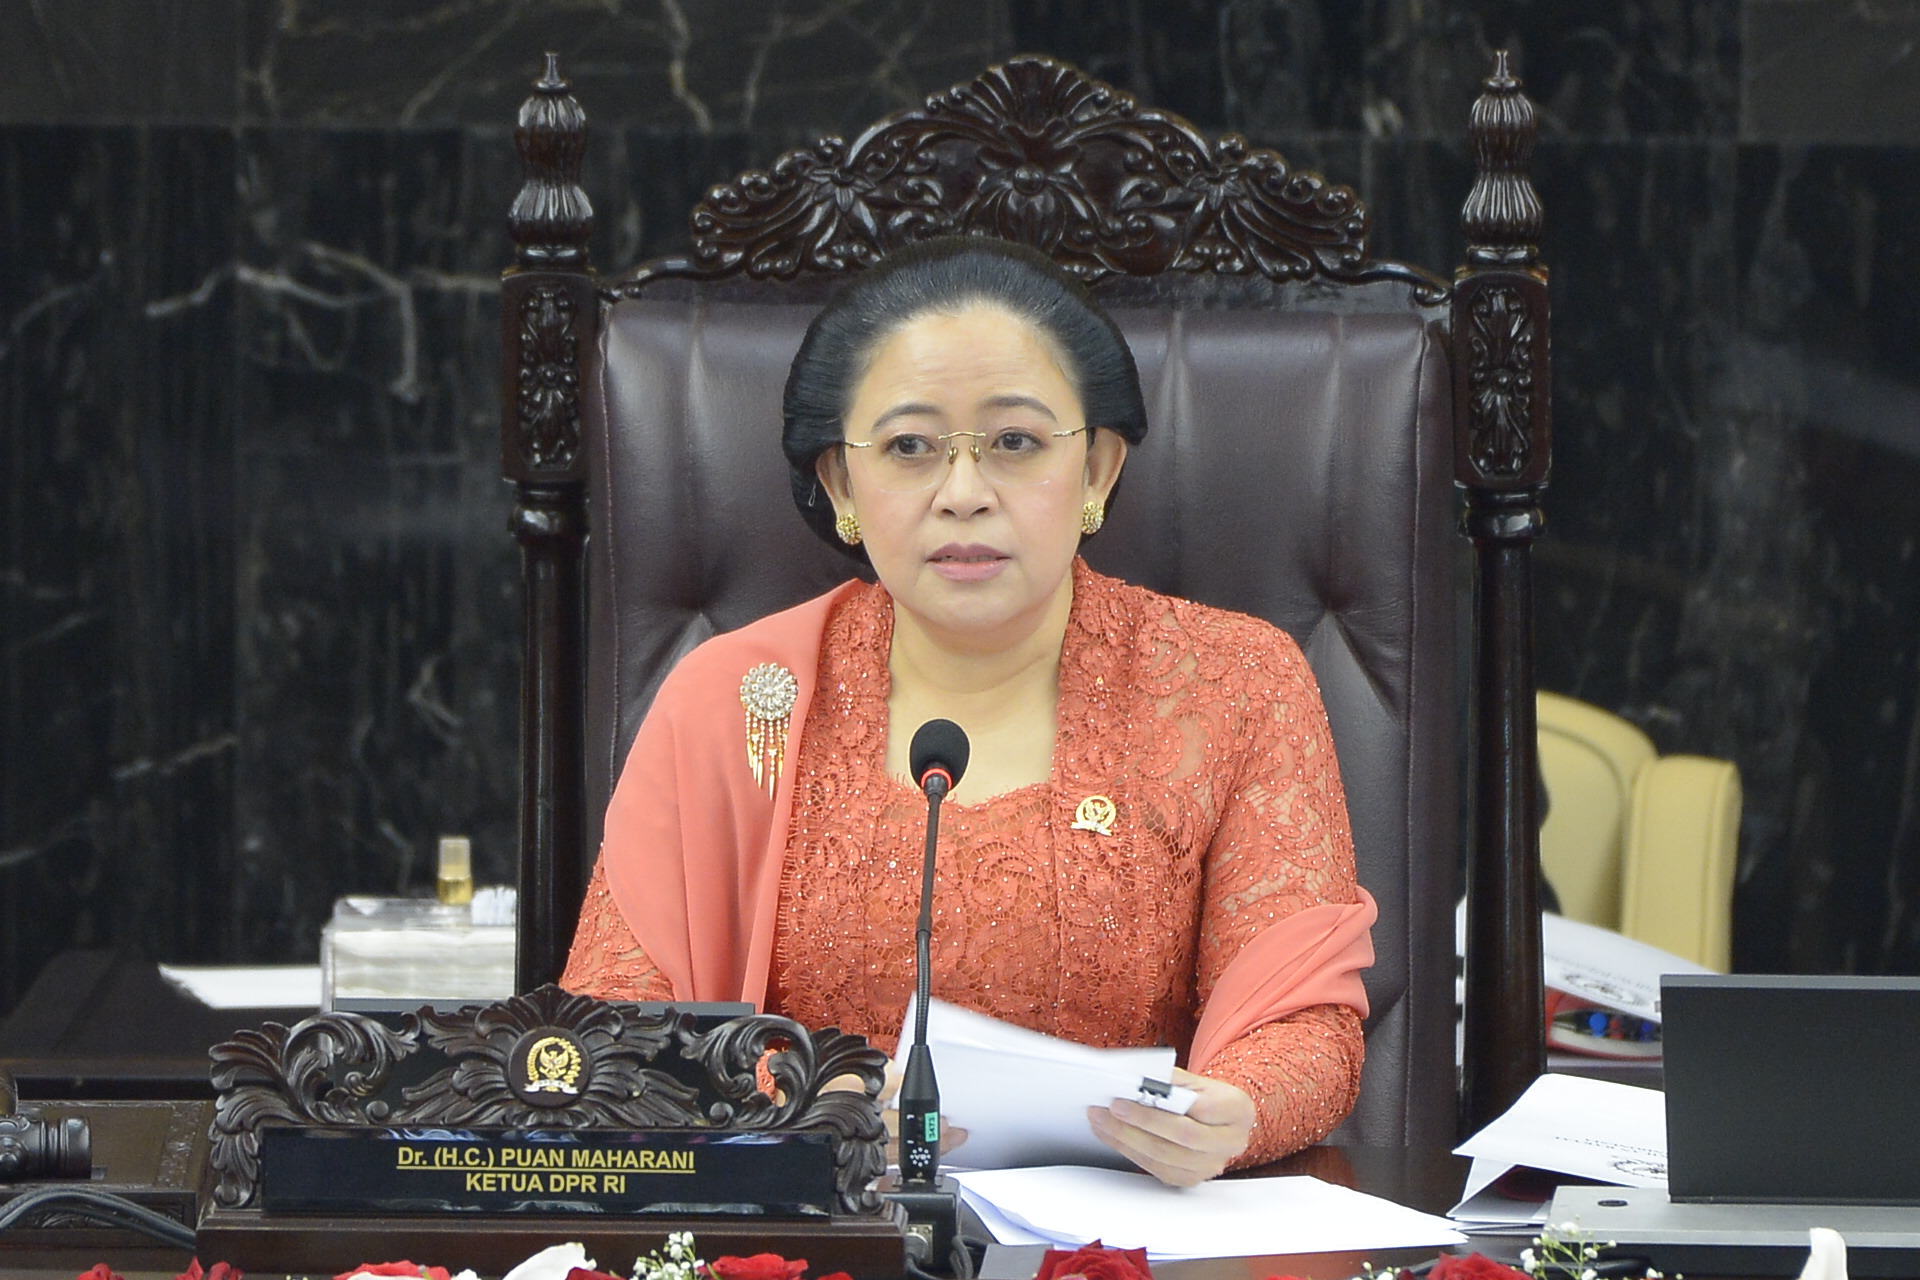 Ketua DPR RI: Indonesia Masih Menghadapi Ketidakpastian